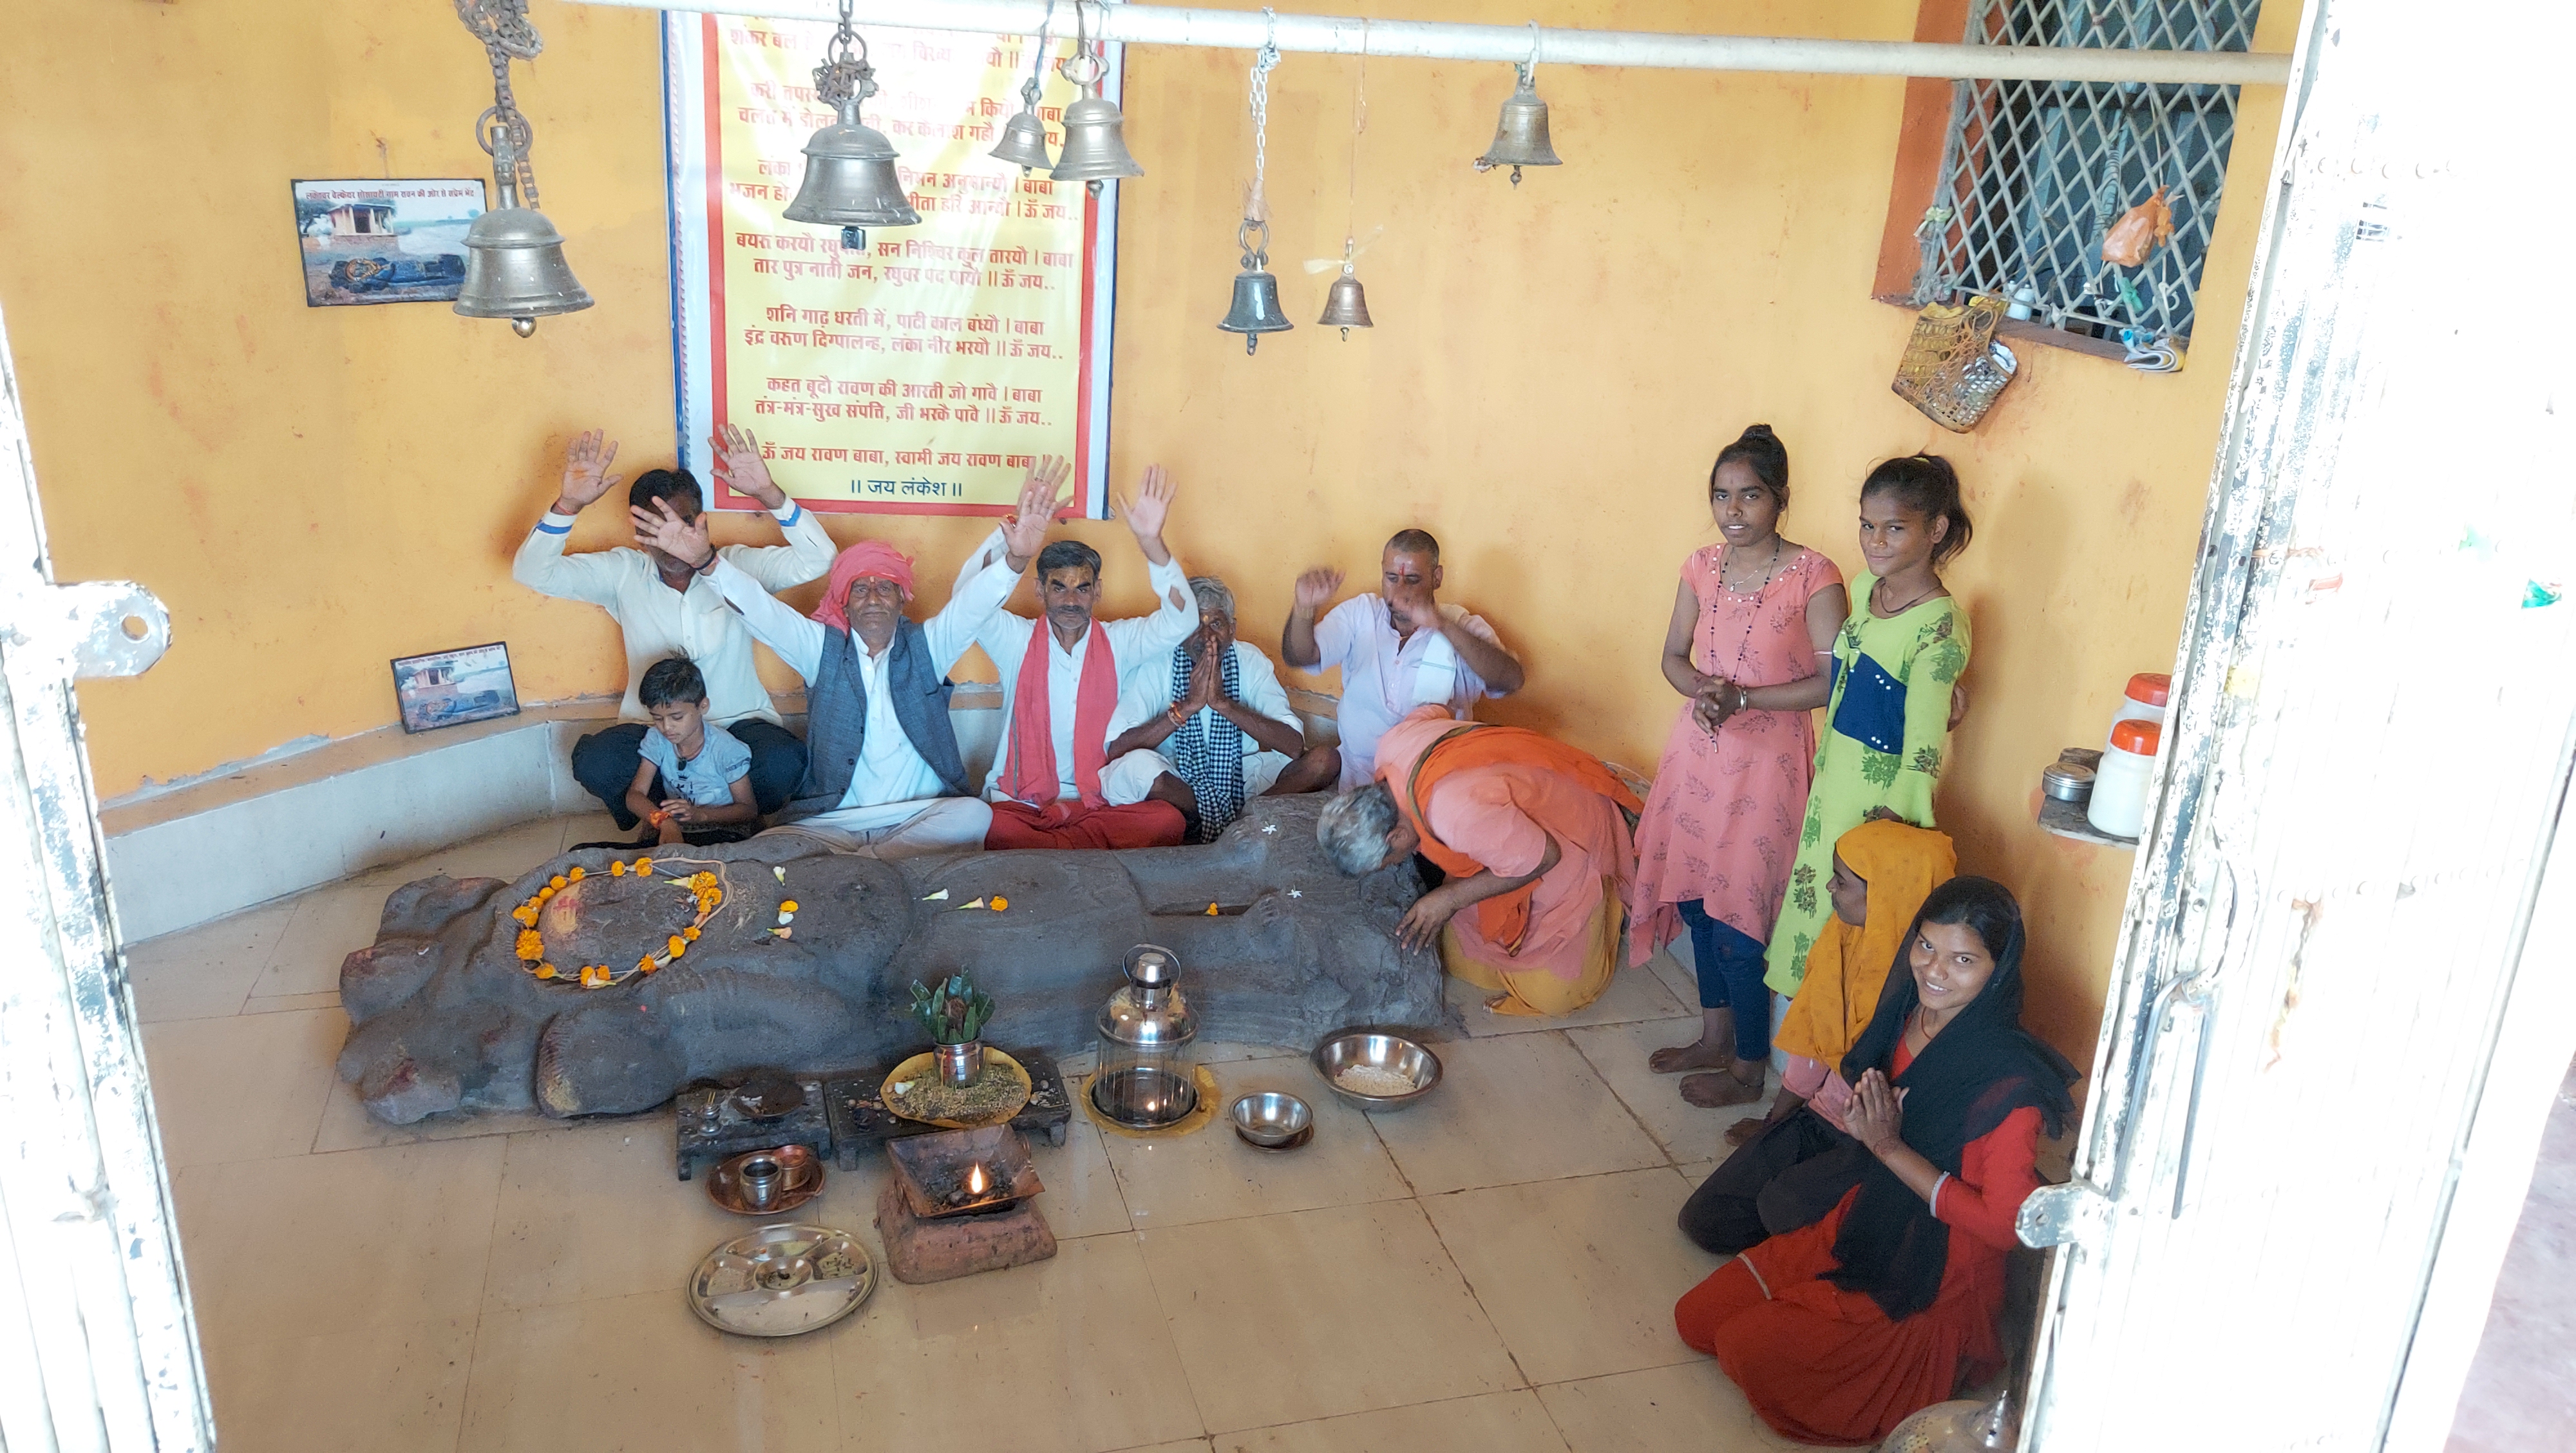 villagers worship ravana as a god